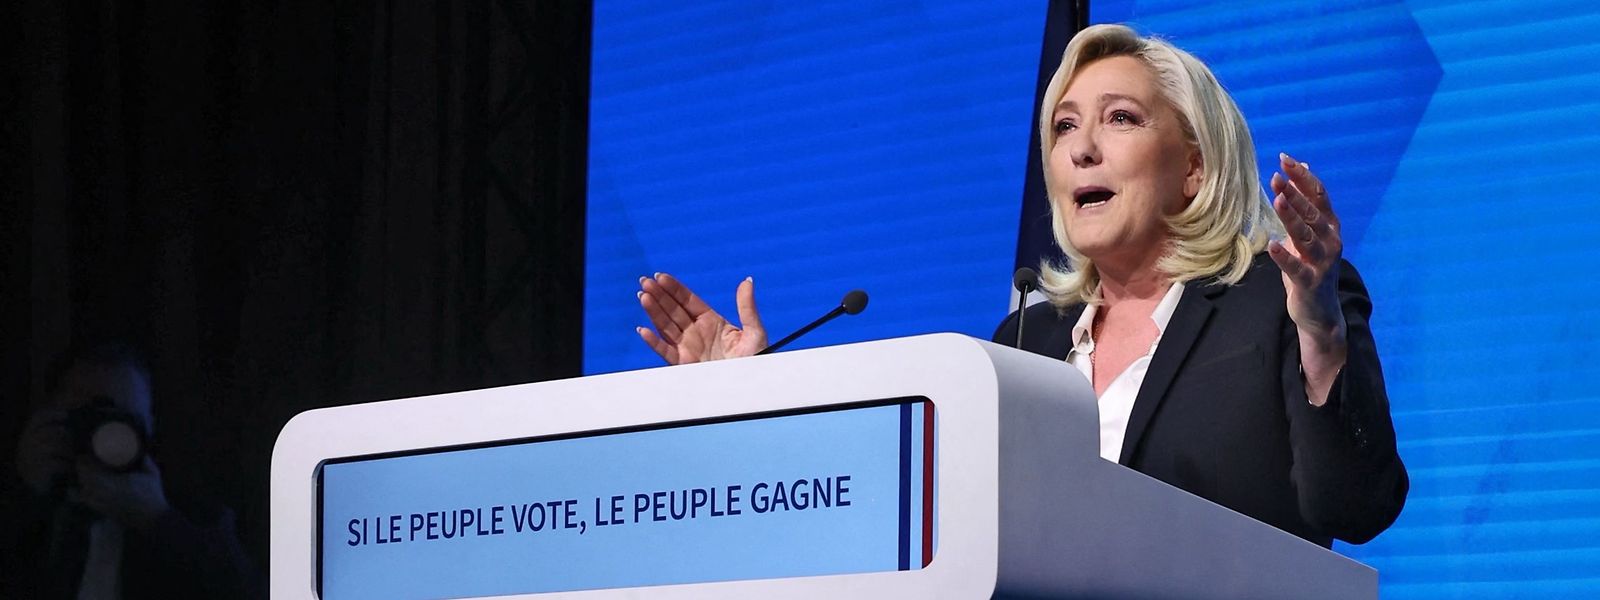 Marine Le Pen a appelé dimanche à une «grande alternance dont (la) France a besoin» après sa qualification pour le second tour de l'élection présidentielle.